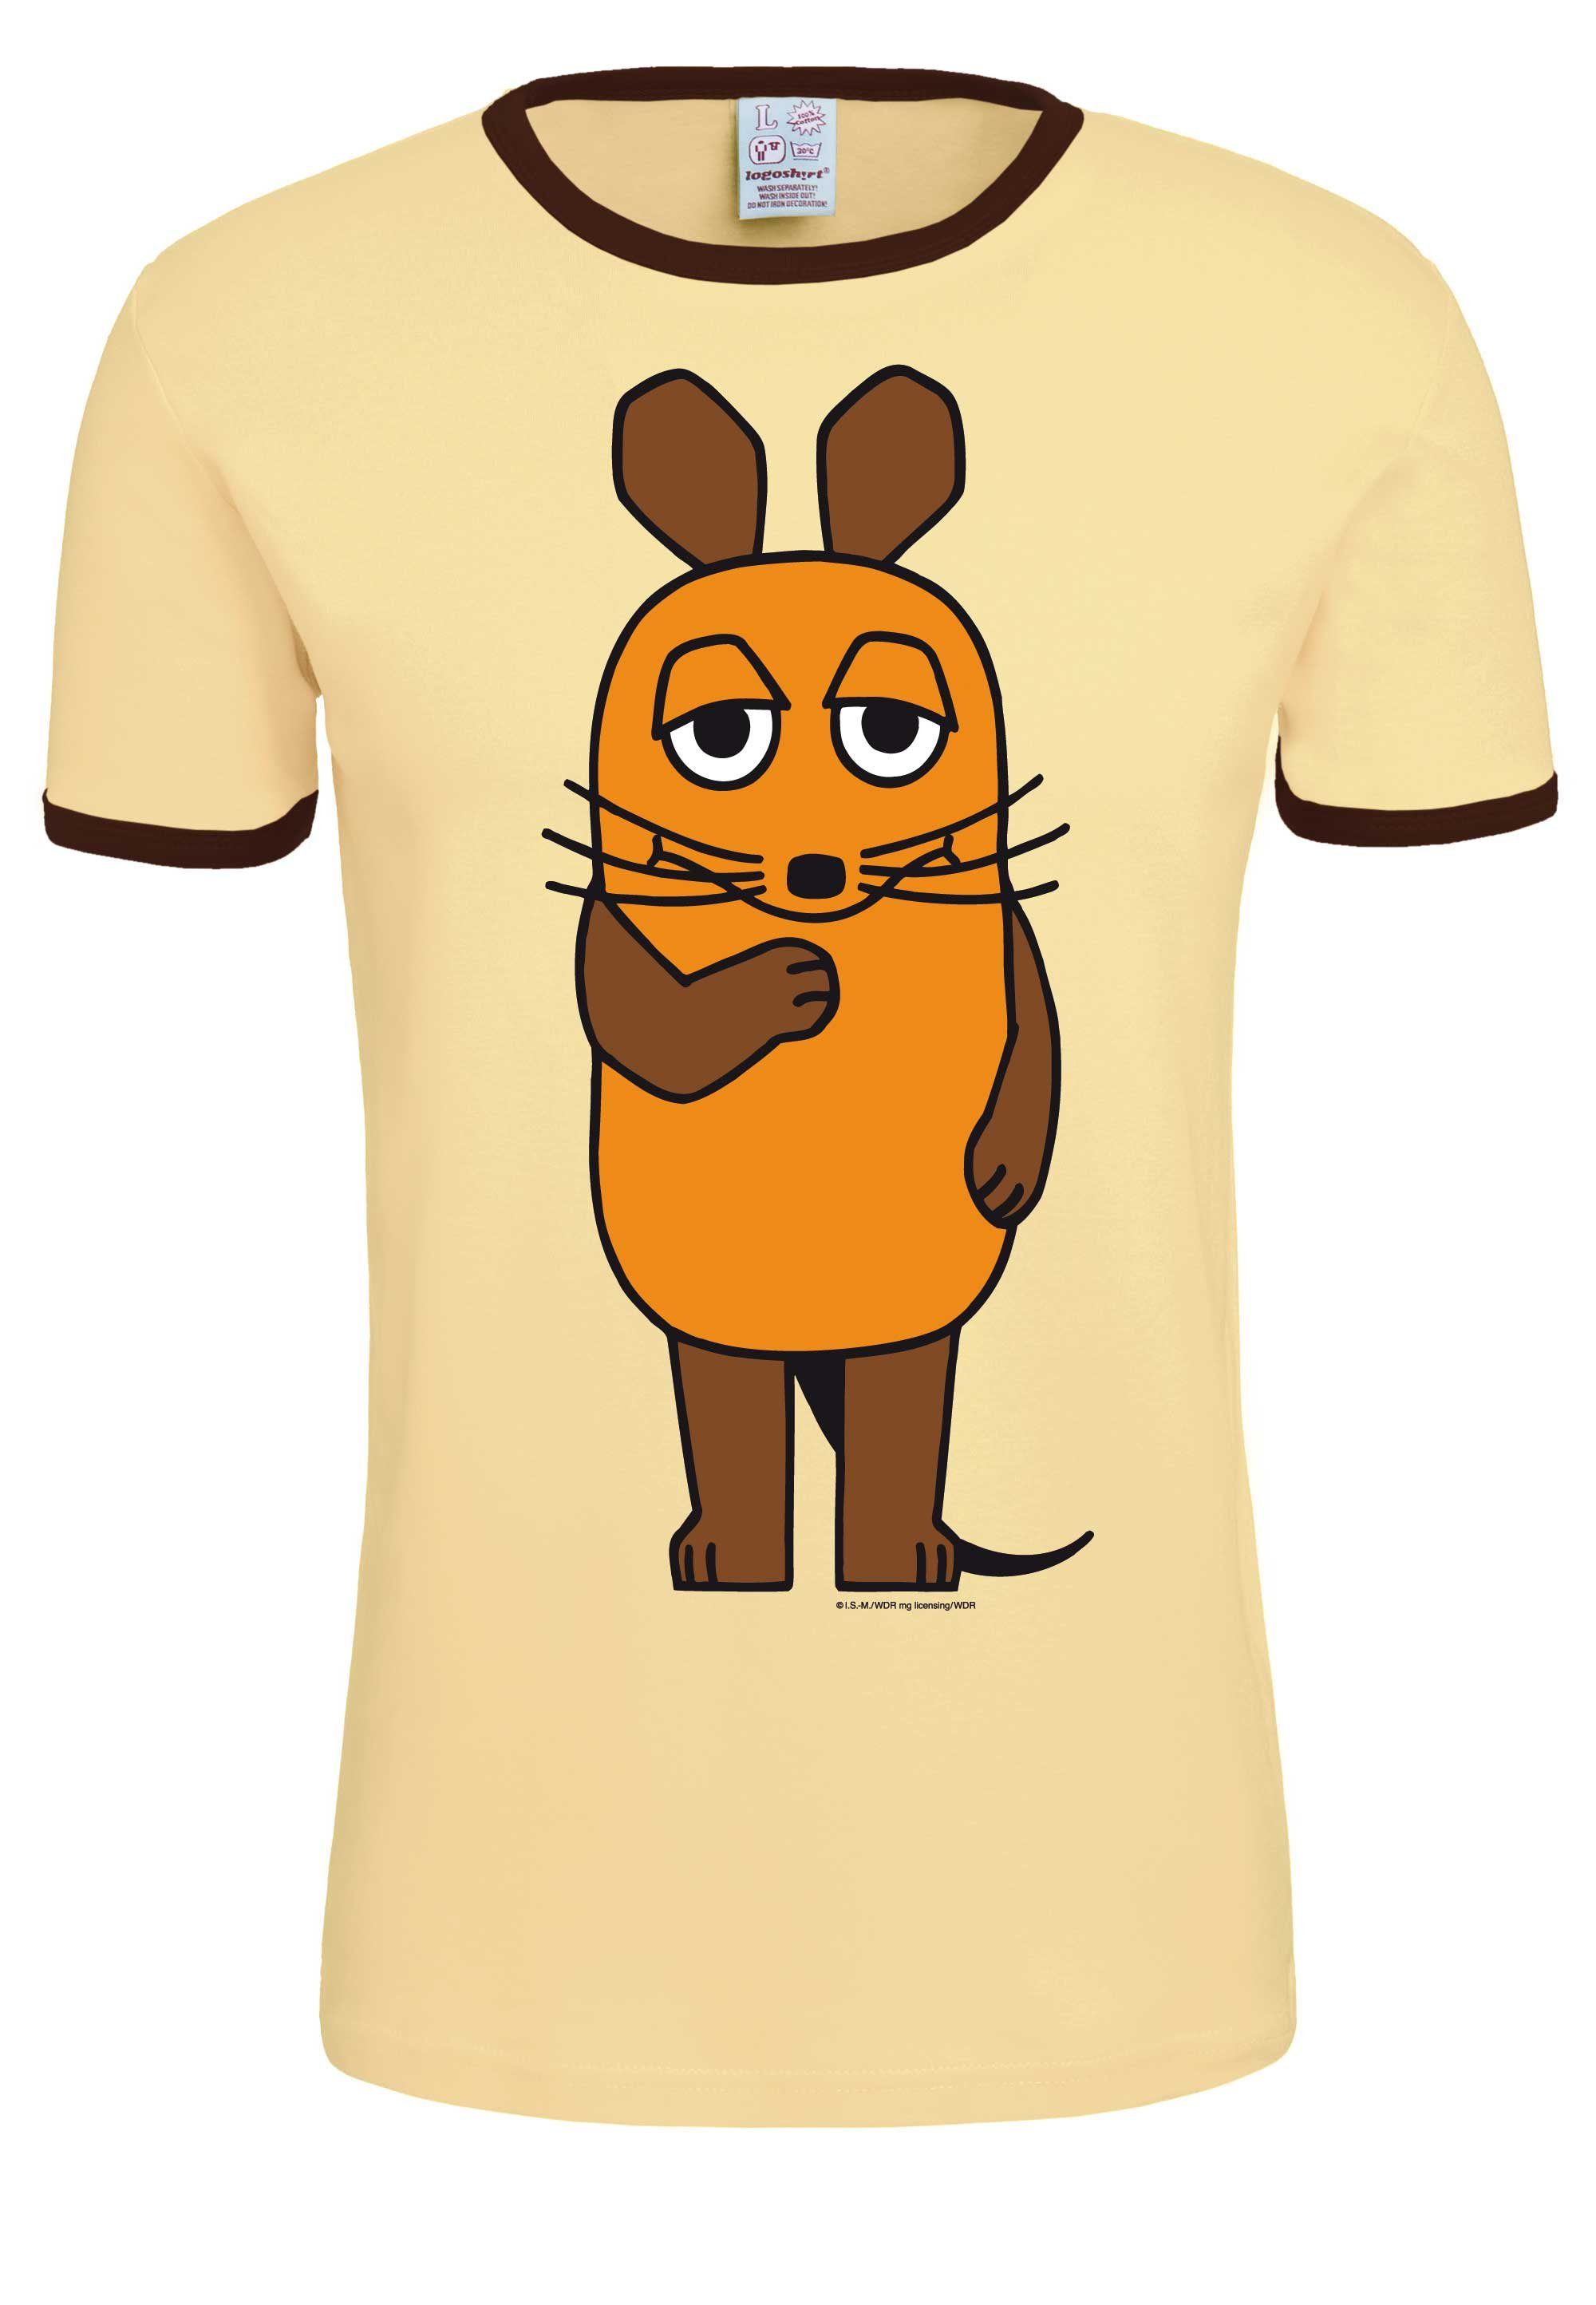 LOGOSHIRT T-Shirt Die Sendung mit Print mit Maus gelb-braun lizenziertem der Die Maus 